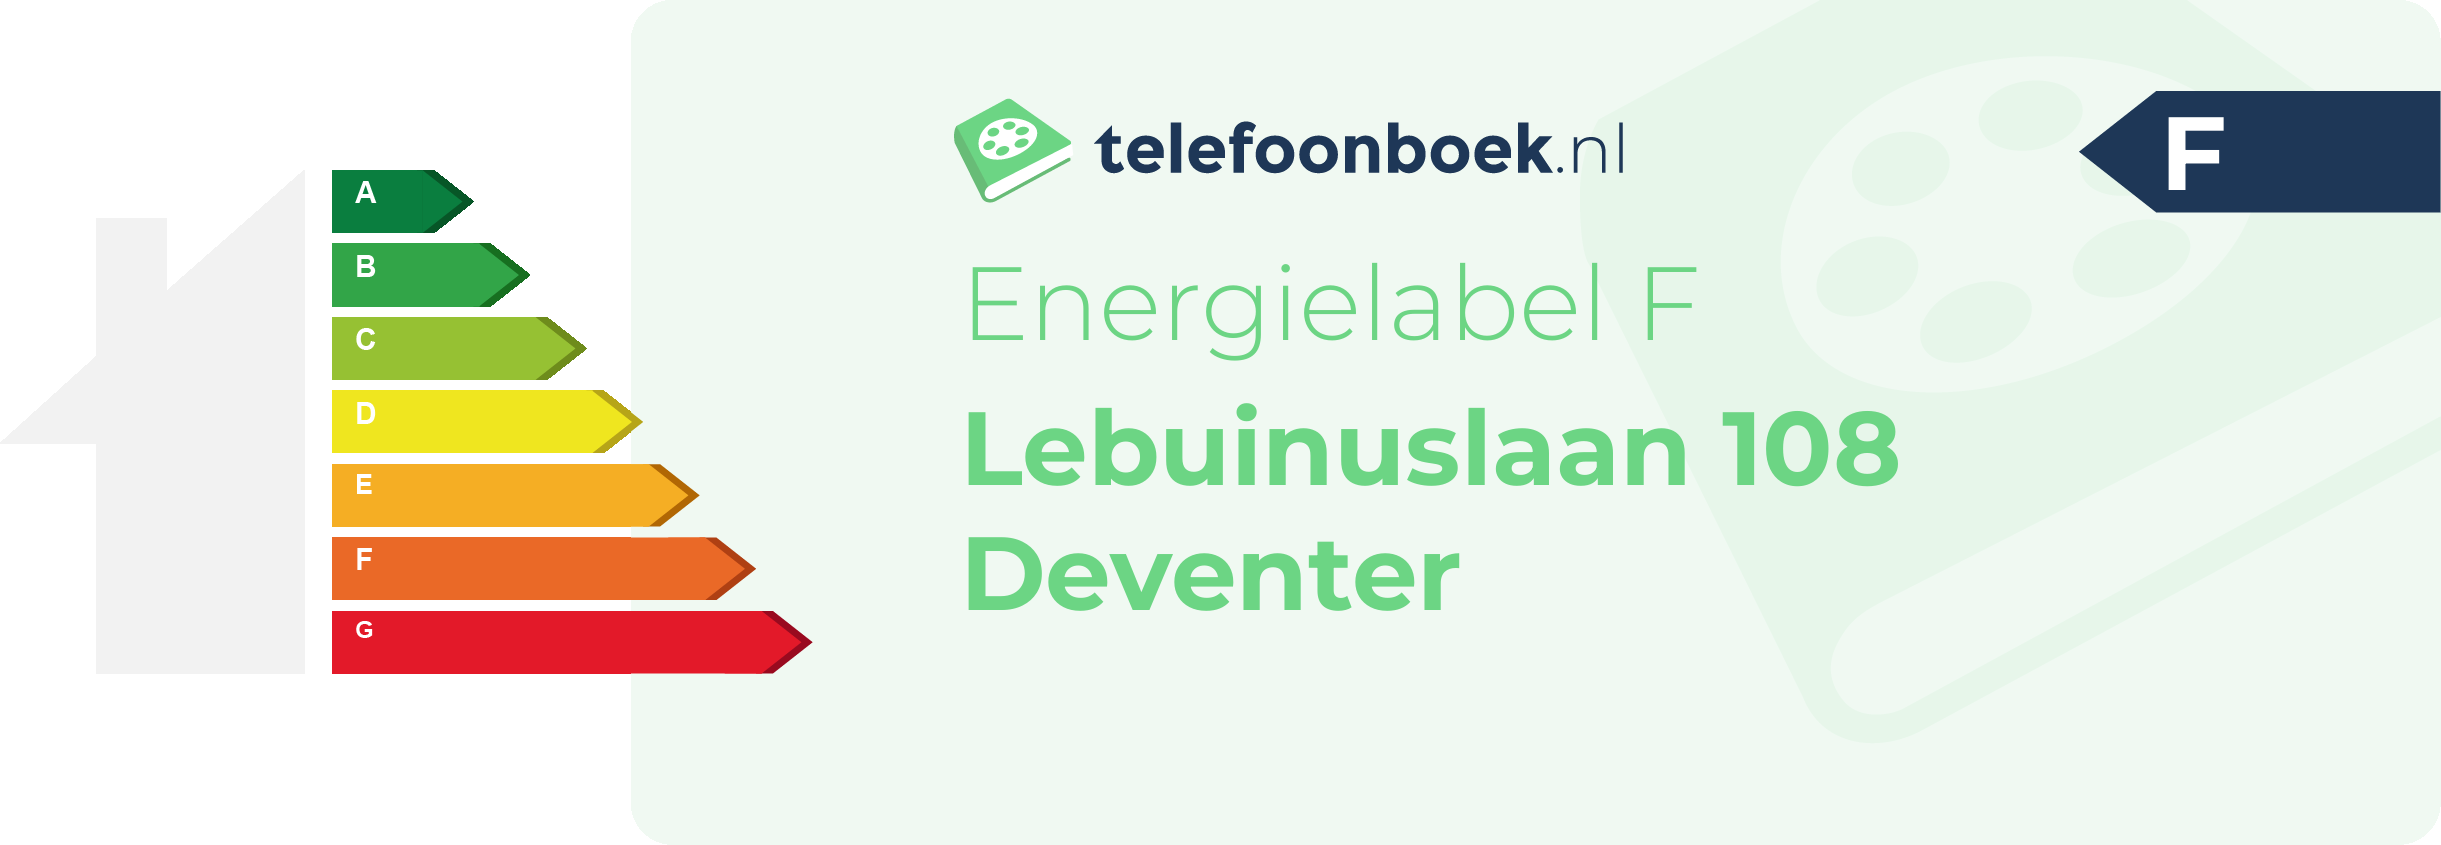 Energielabel Lebuinuslaan 108 Deventer